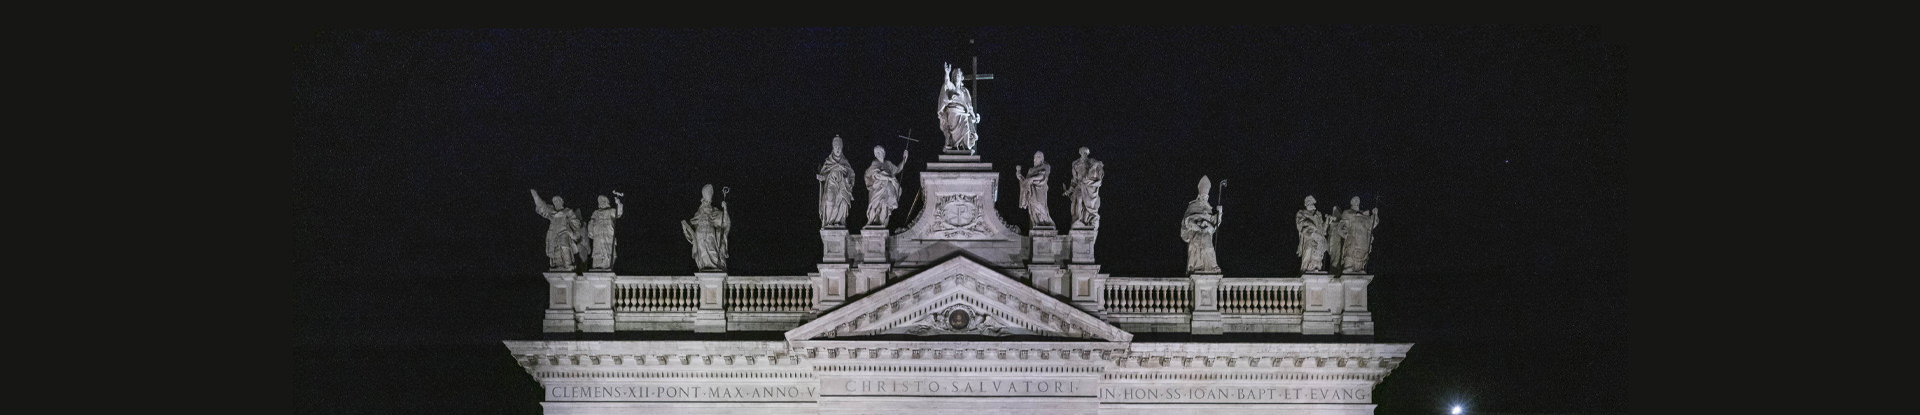 Acea, l'illuminazione della Basilica di San Giovanni in Laterano